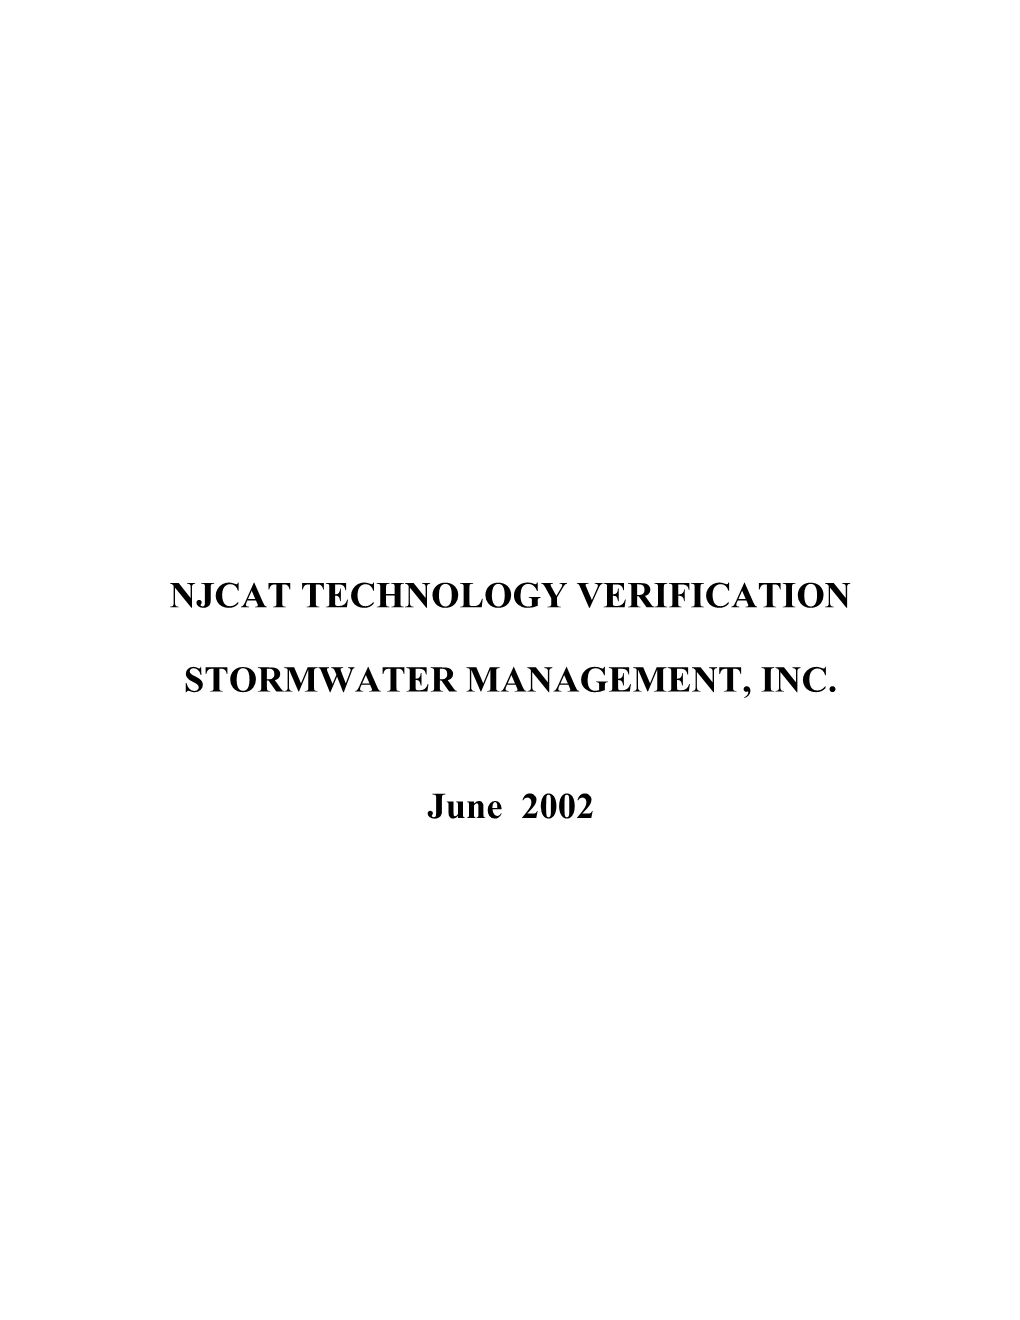 NJCAT TECHNOLOGY VERIFICATION - Stormfilter